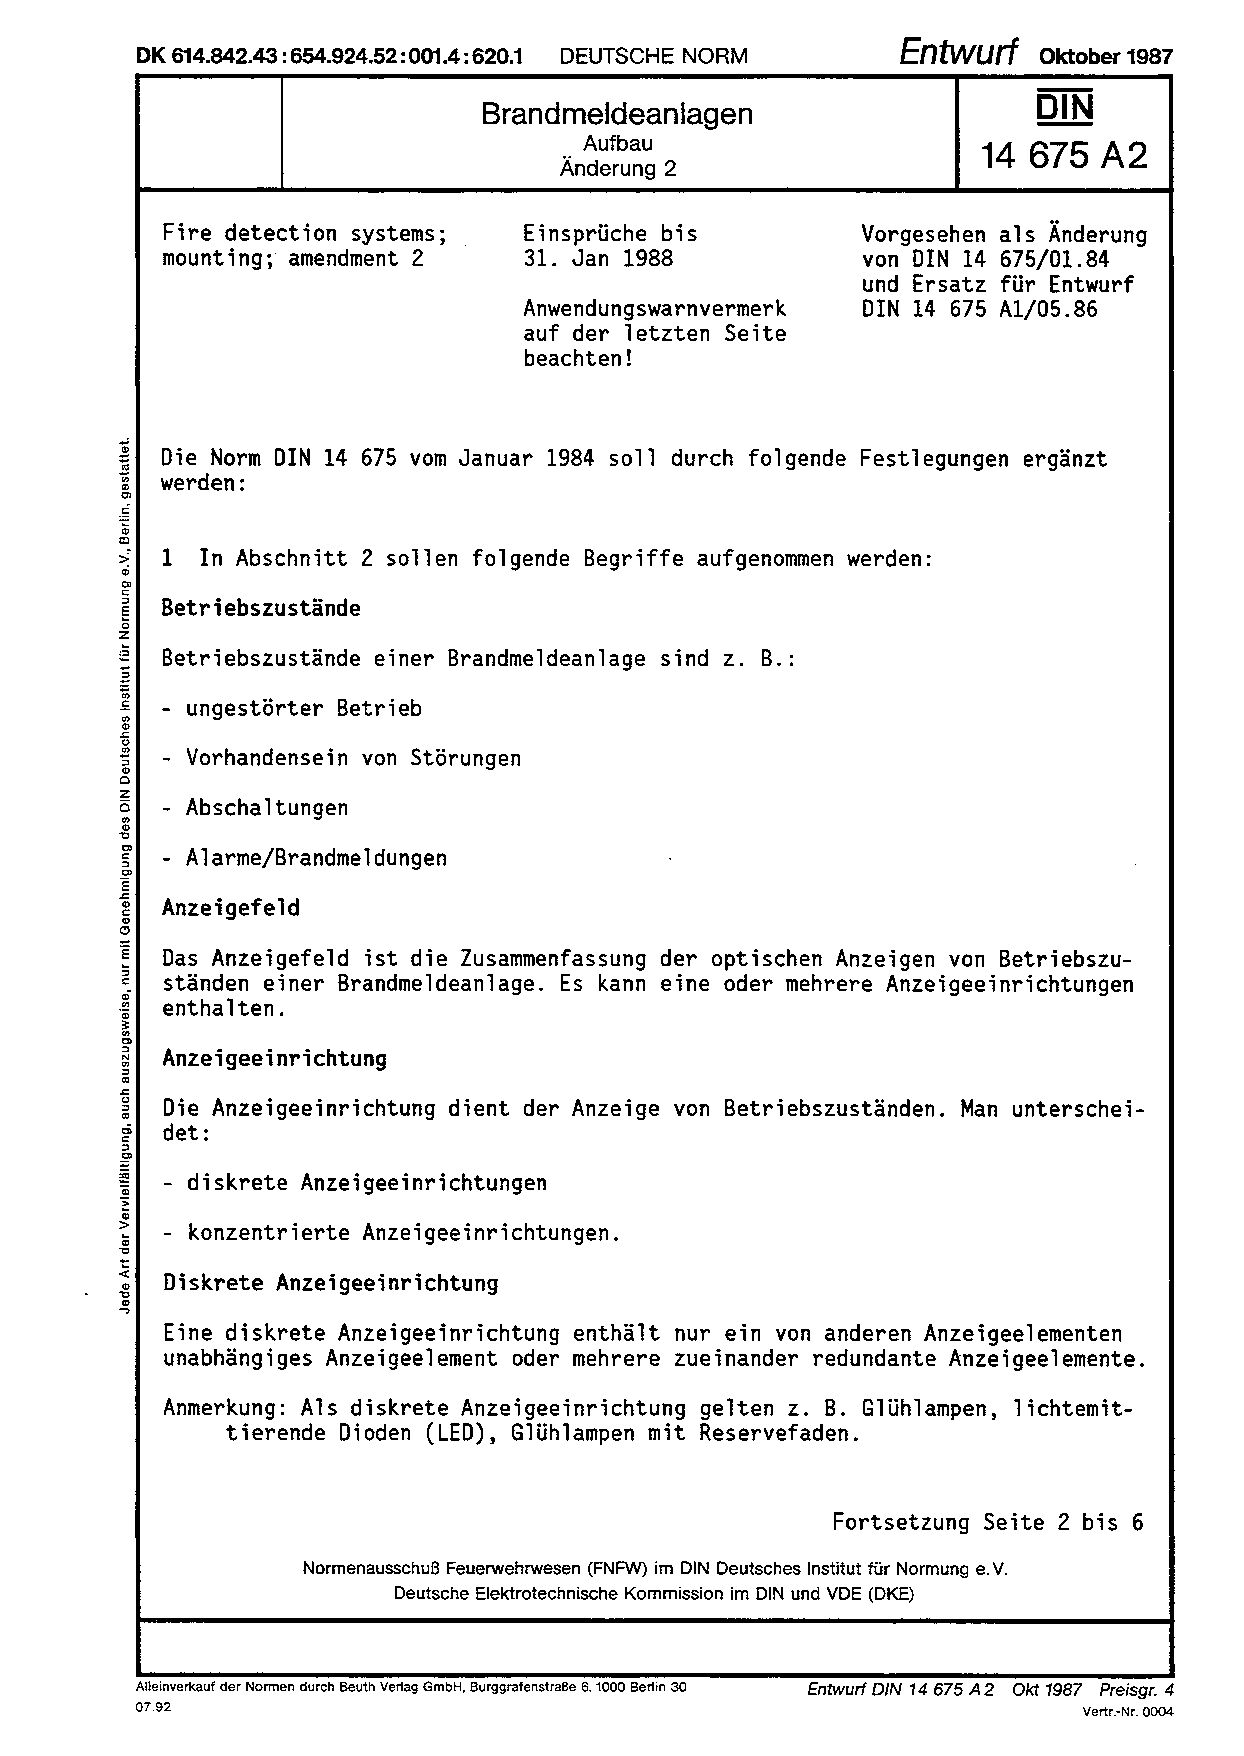 DIN 14675 A2 E:1987-10封面图